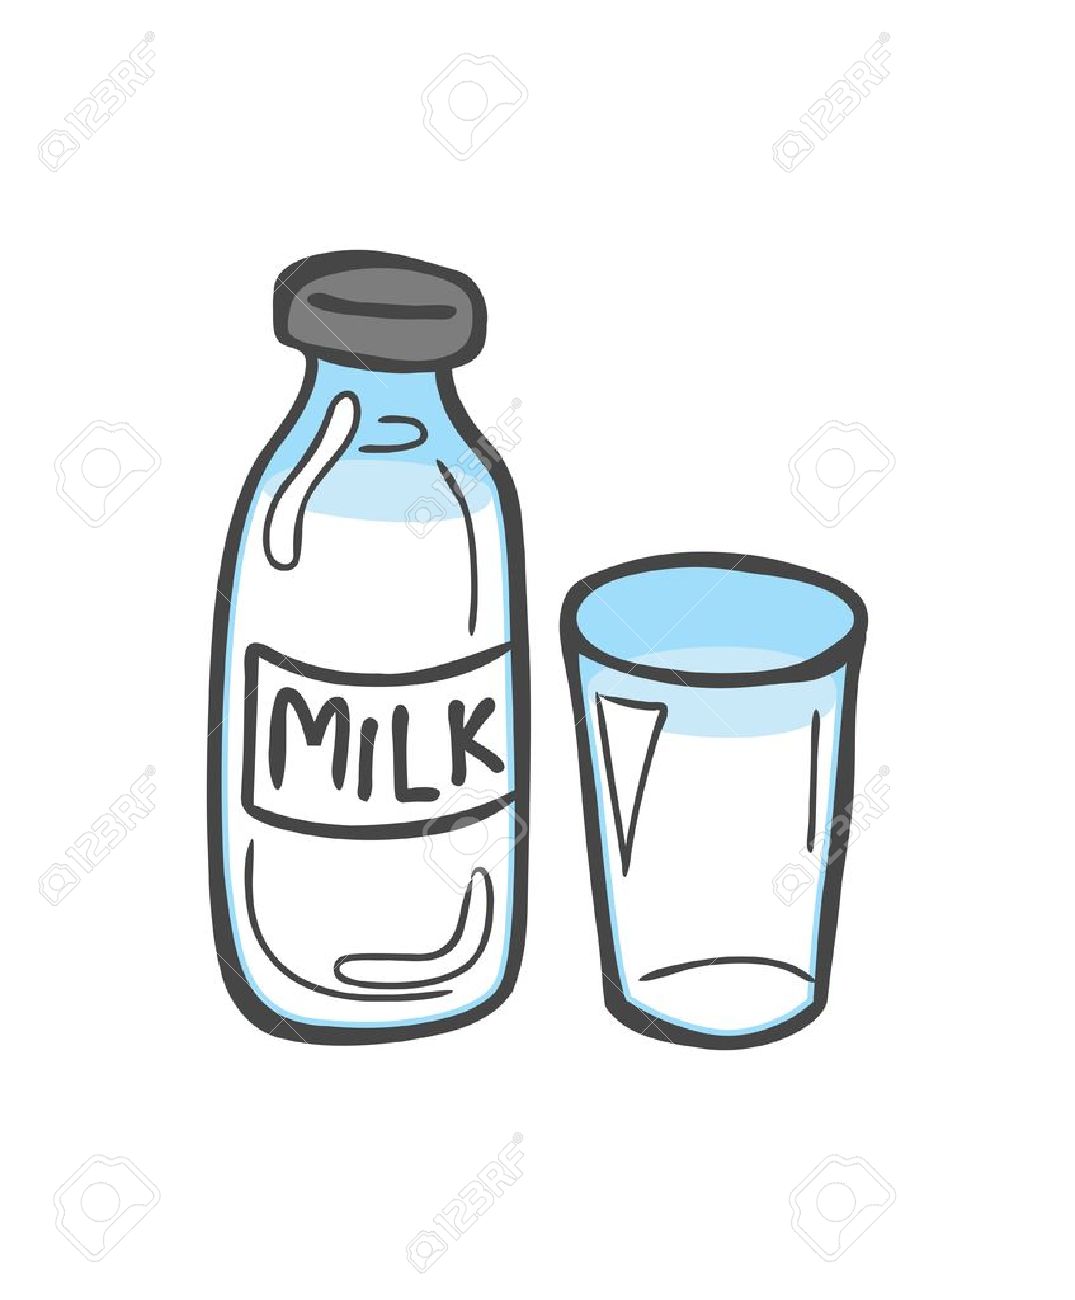 milk bottle: bottle of milk .